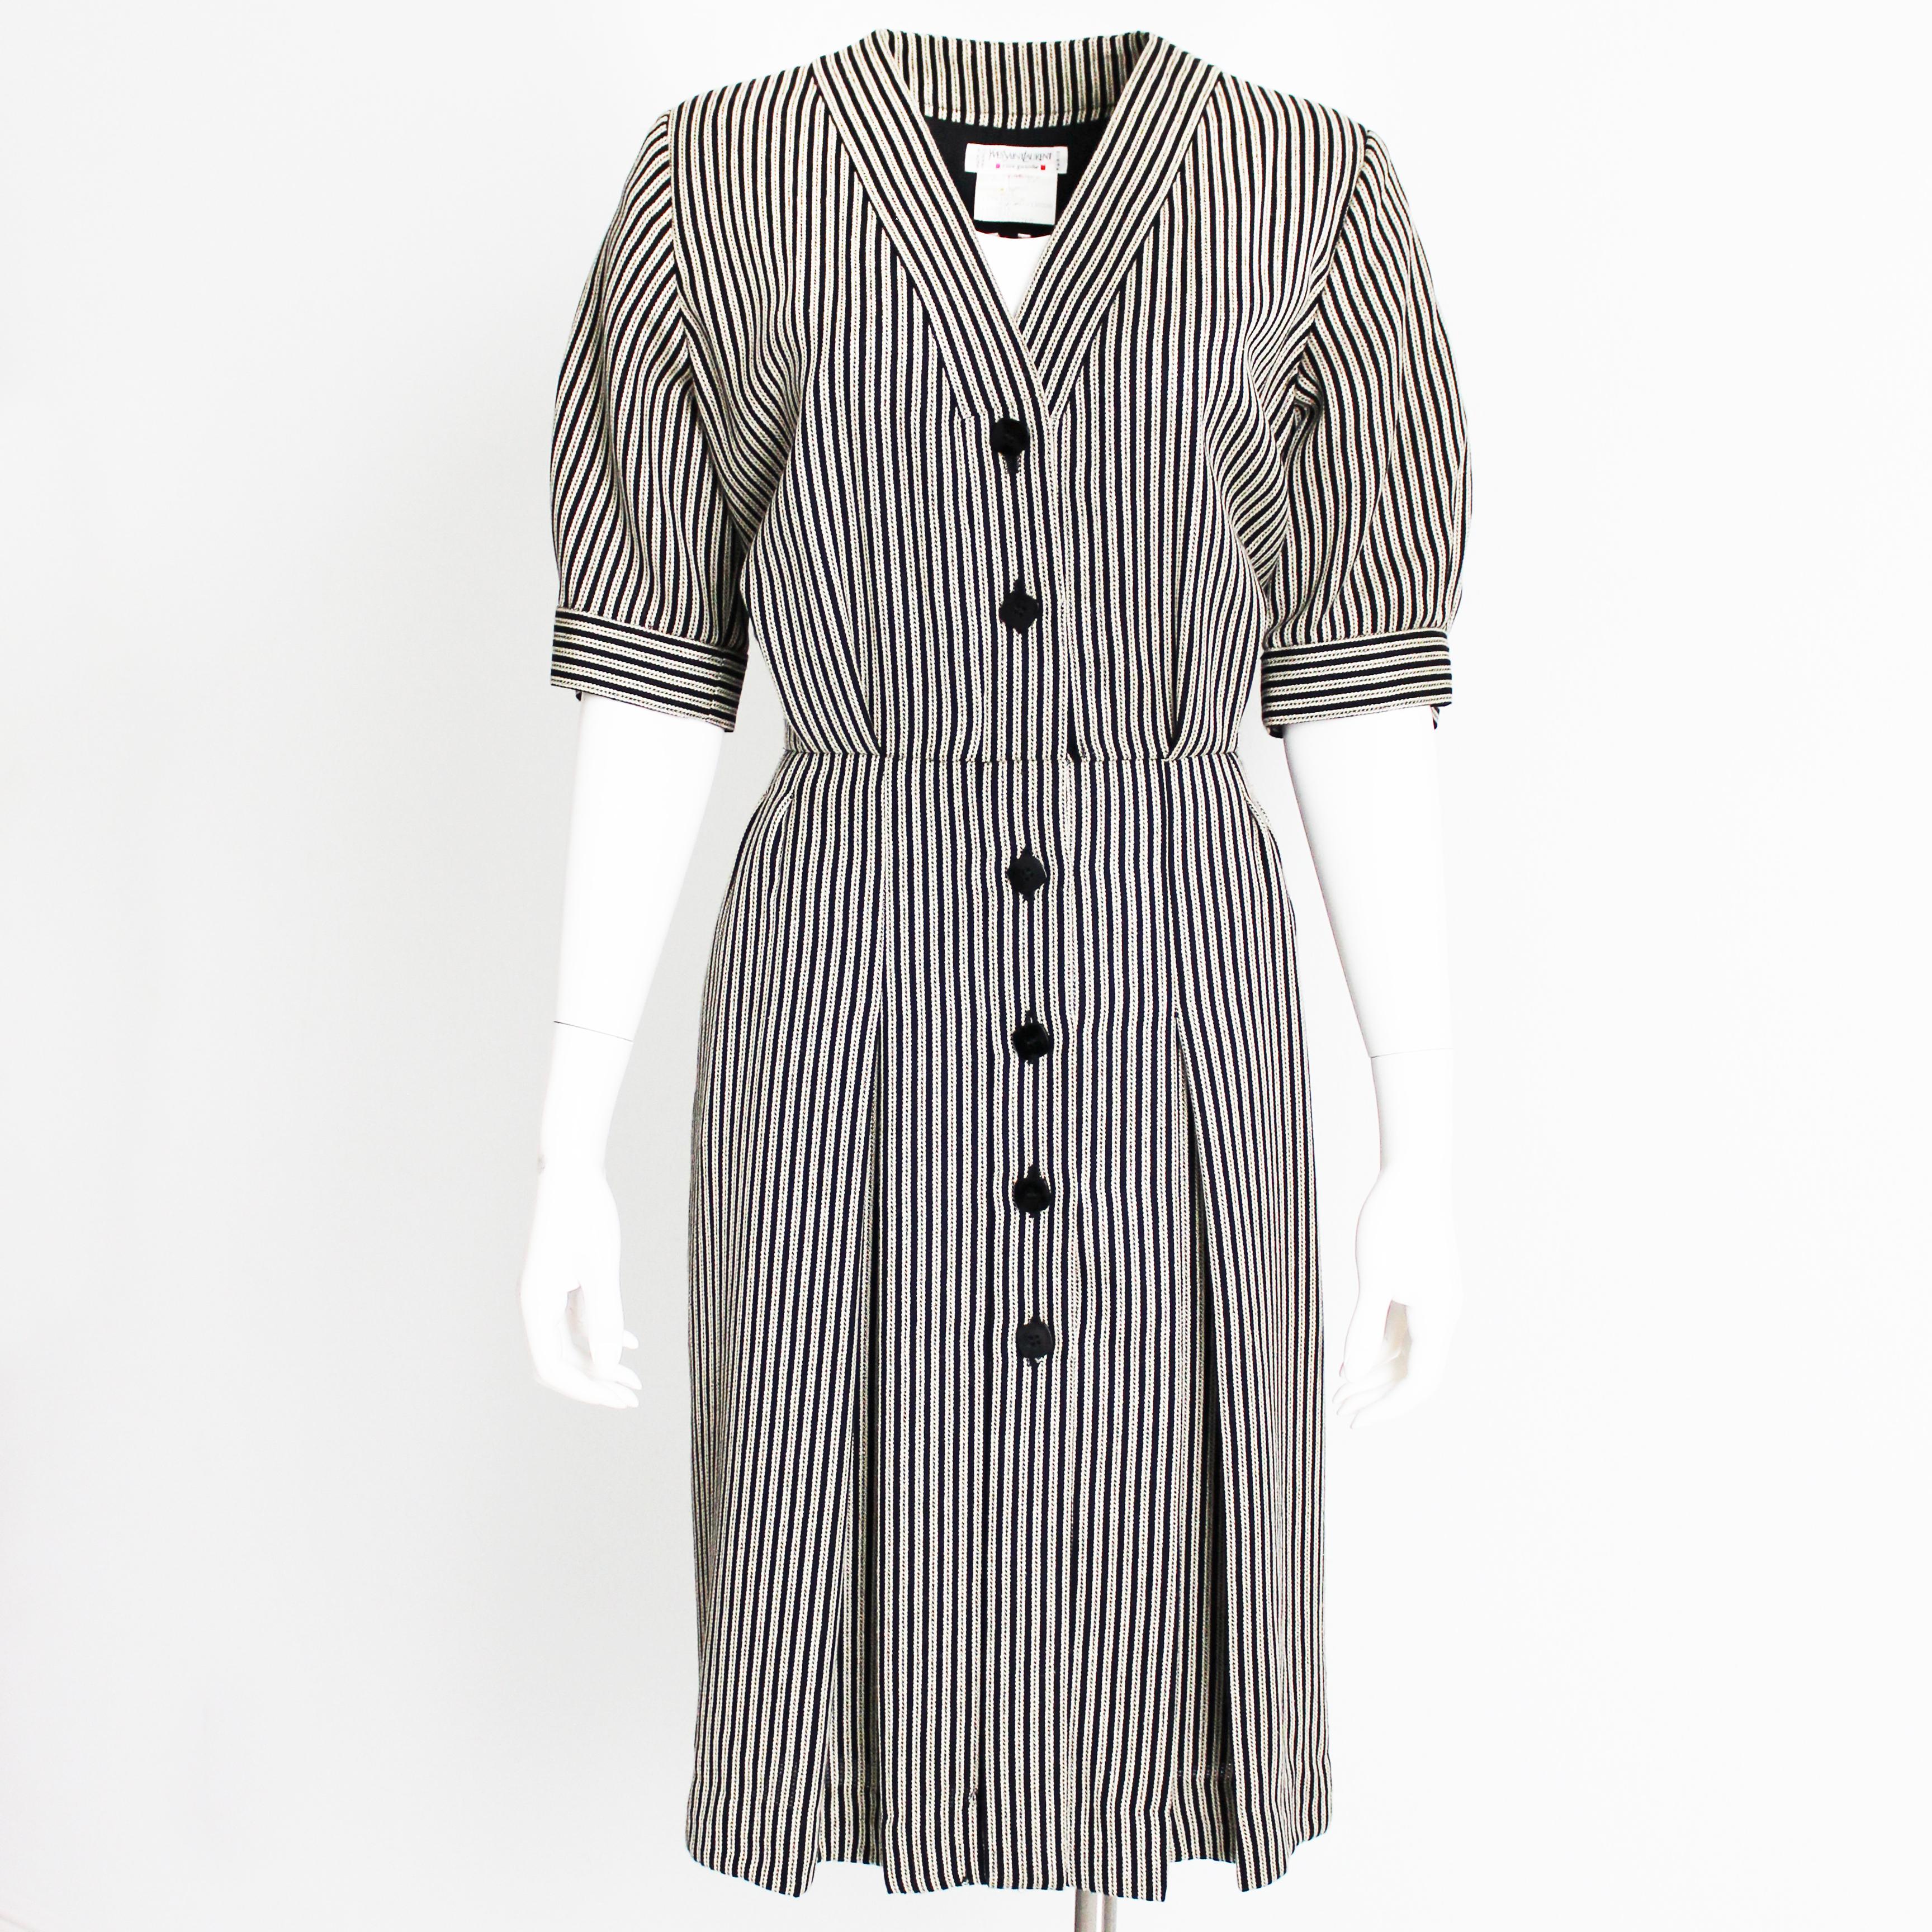 Authentisches, gebrauchtes, Vintage Yves Saint Laurent Rive Gauche Nadelstreifen-Kleid, wahrscheinlich aus den 1990er Jahren.  Es ist aus einem gewebten Nadelstreifenstoff aus Wolle/Seide/Viskose gefertigt und verfügt über eine Knopfleiste, einen